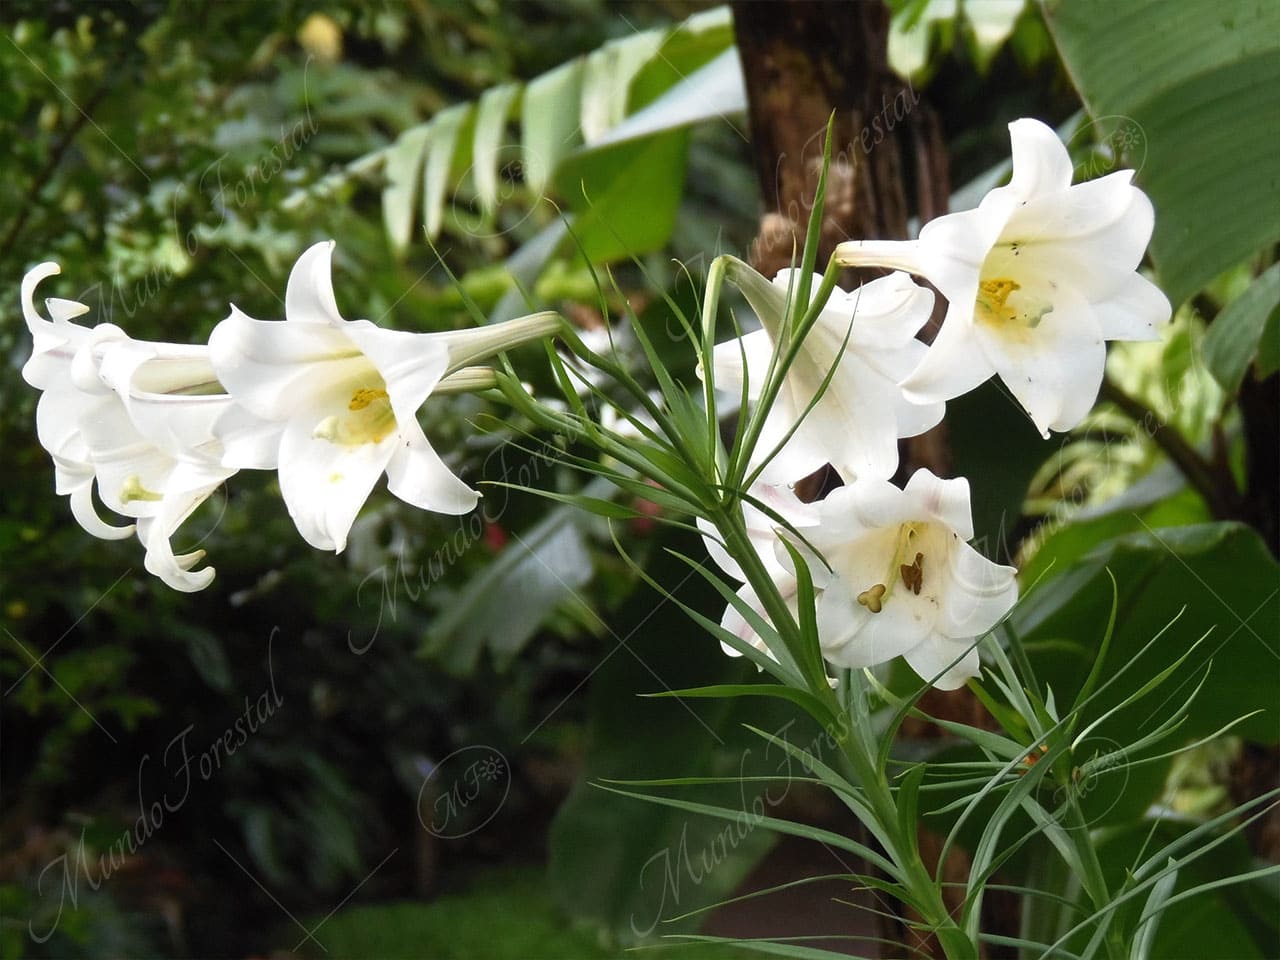 La azucena - Lilium longiflorum - Liliaceae - MundoForestal